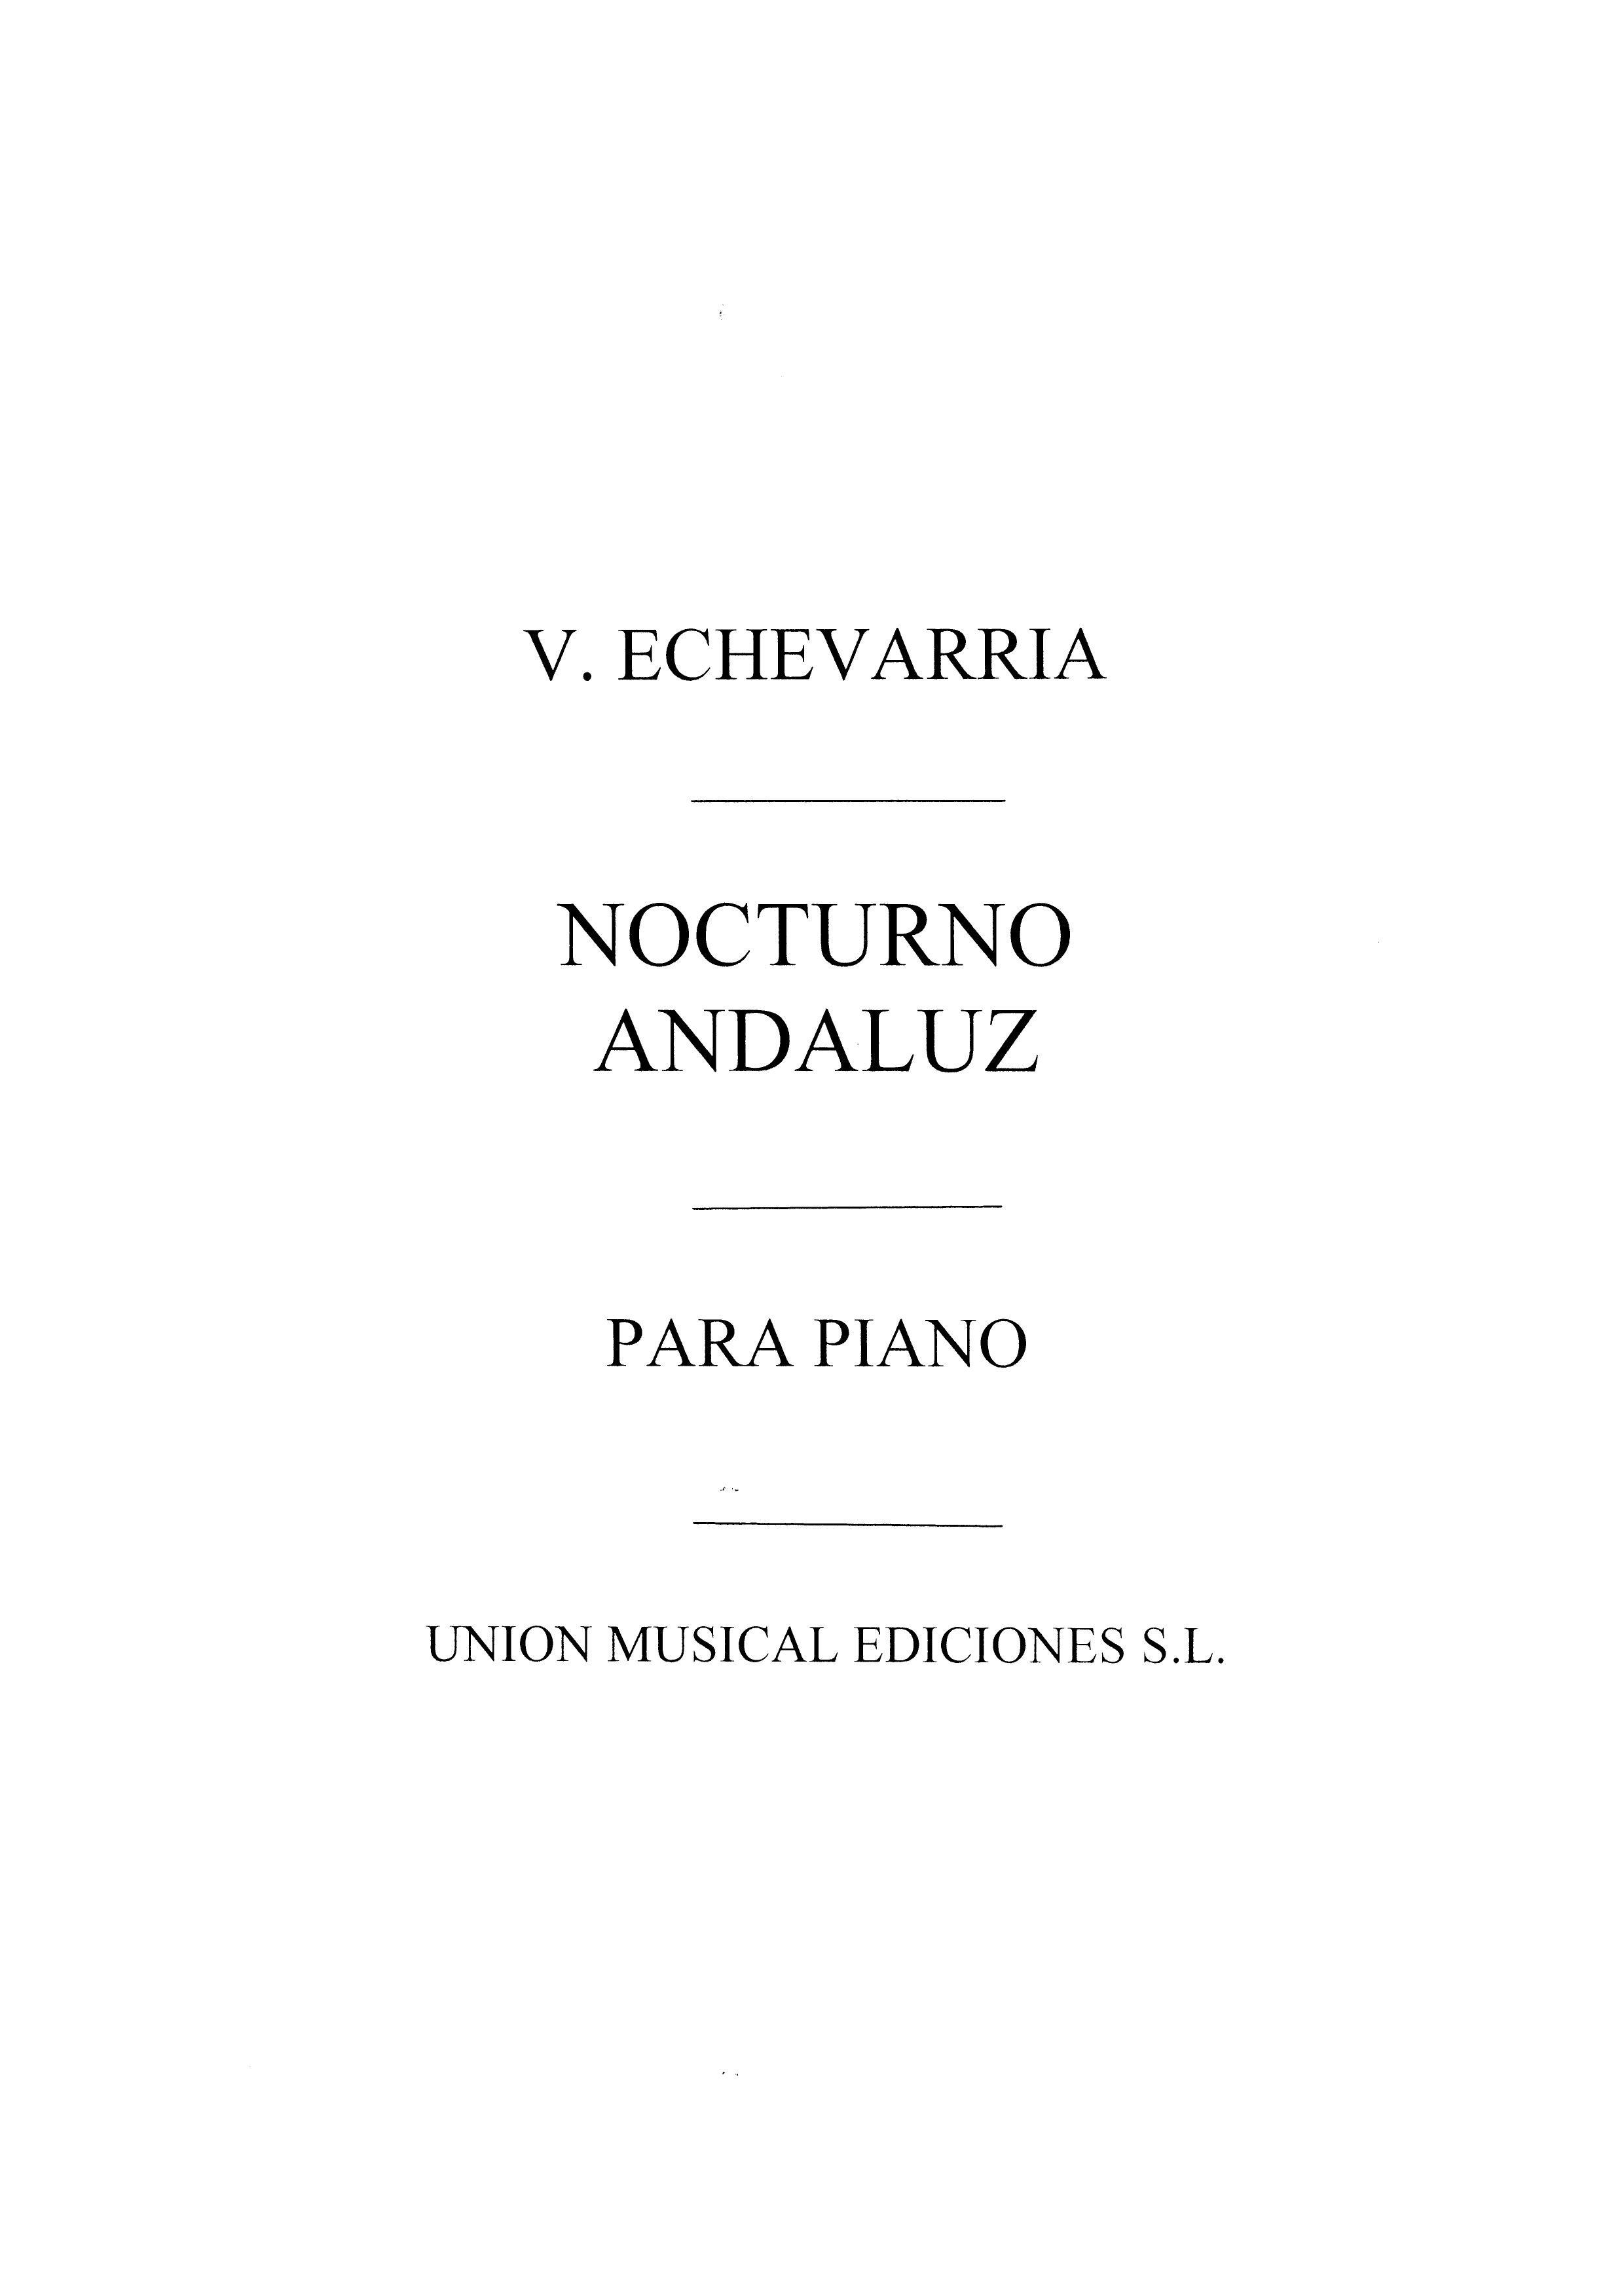 Nocturno Andaluza: Piano